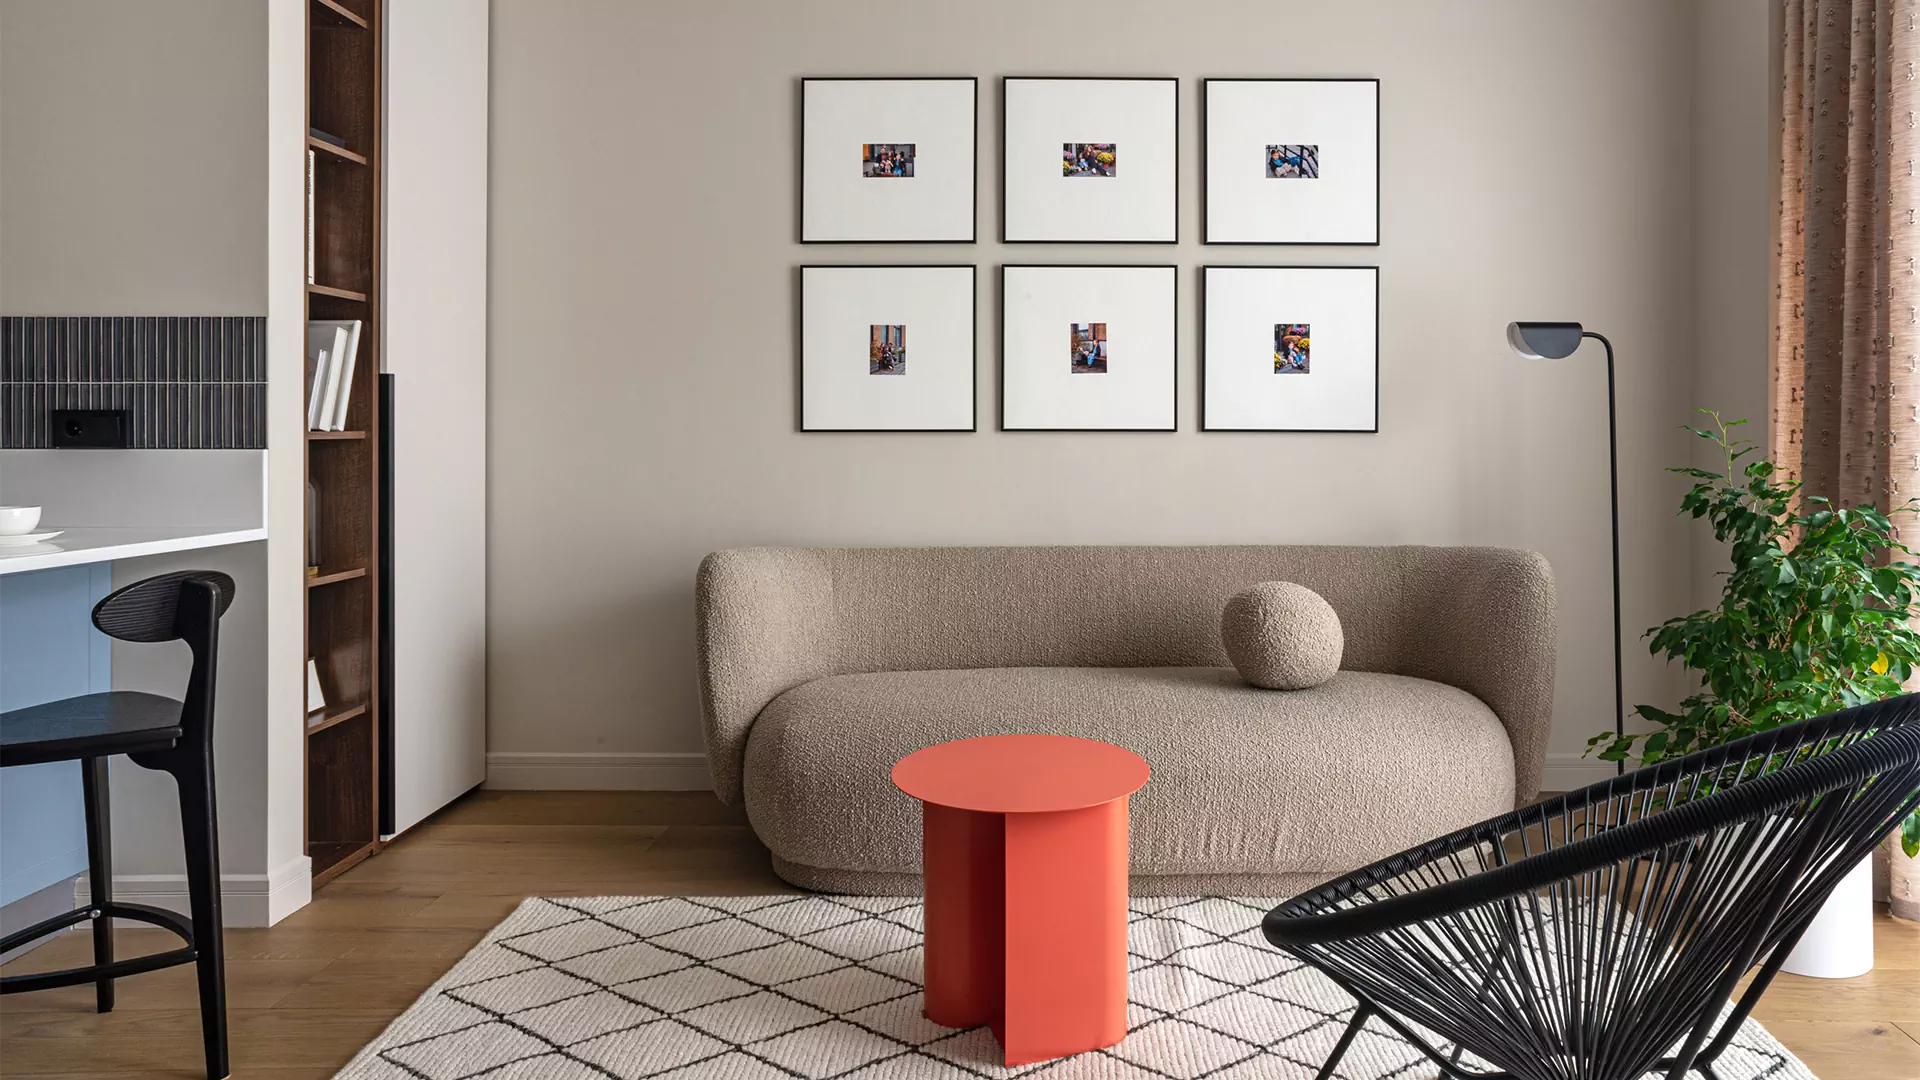 Пастельные тона и мягкие формы в интерьере квартиры для семьи с детьми — проект Анны и Дмитрия Коробко